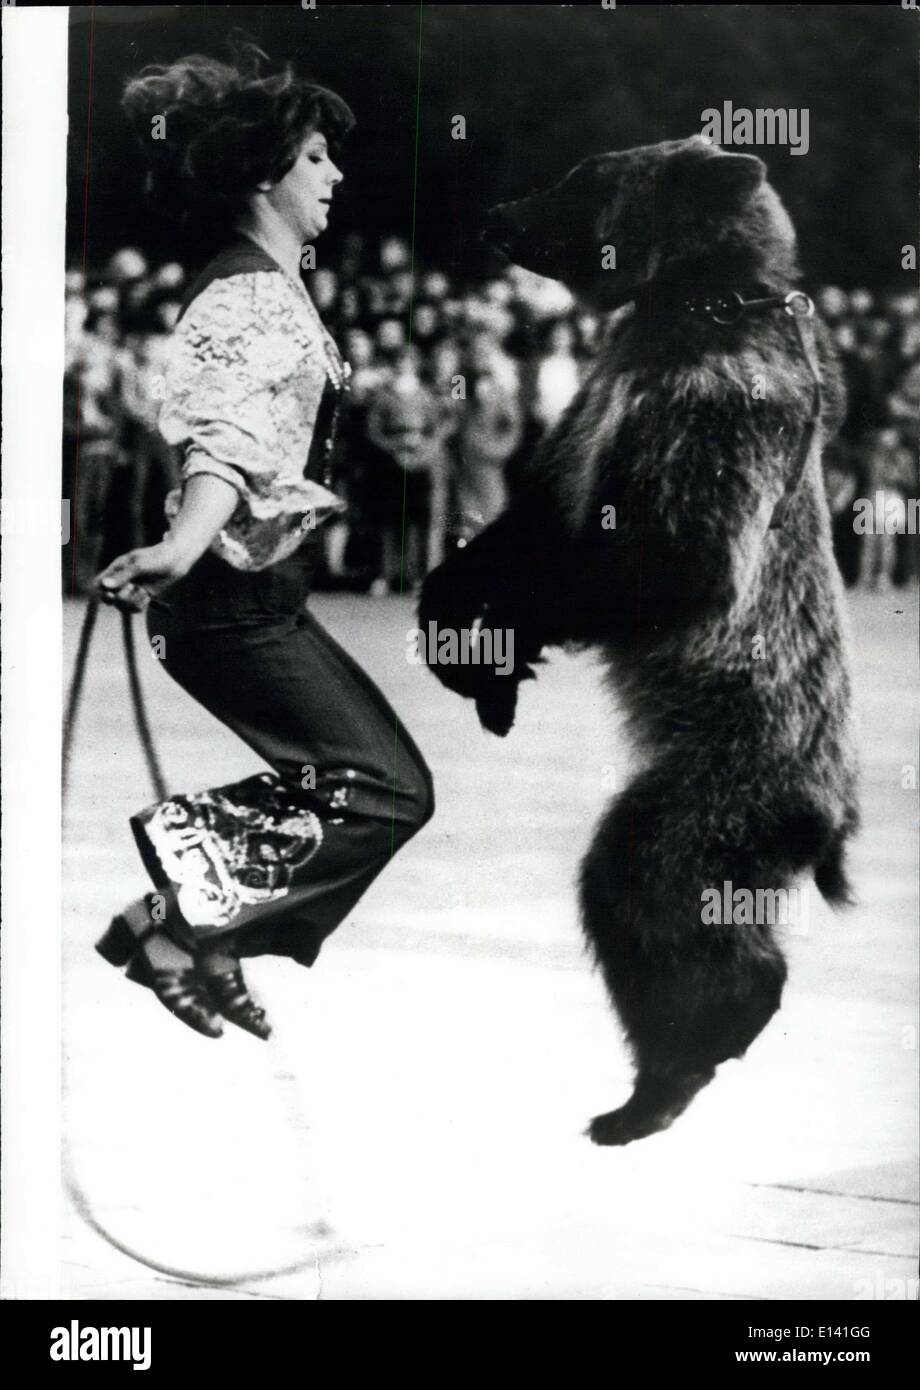 31 mars 2012 - Gagner une 'Bear' vie. : 'Michka' est le nom de cet ours, il était le modèle original de la Fédération de l'emblème des Jeux Olympiques. Maintenant elle est de retour avec son entraîneur, gagner sa vie pour vos réceptions les visiteurs de Moscou, Michka est très polyvalent, et un de ses exercices préférés saute comme vu ici. Banque D'Images